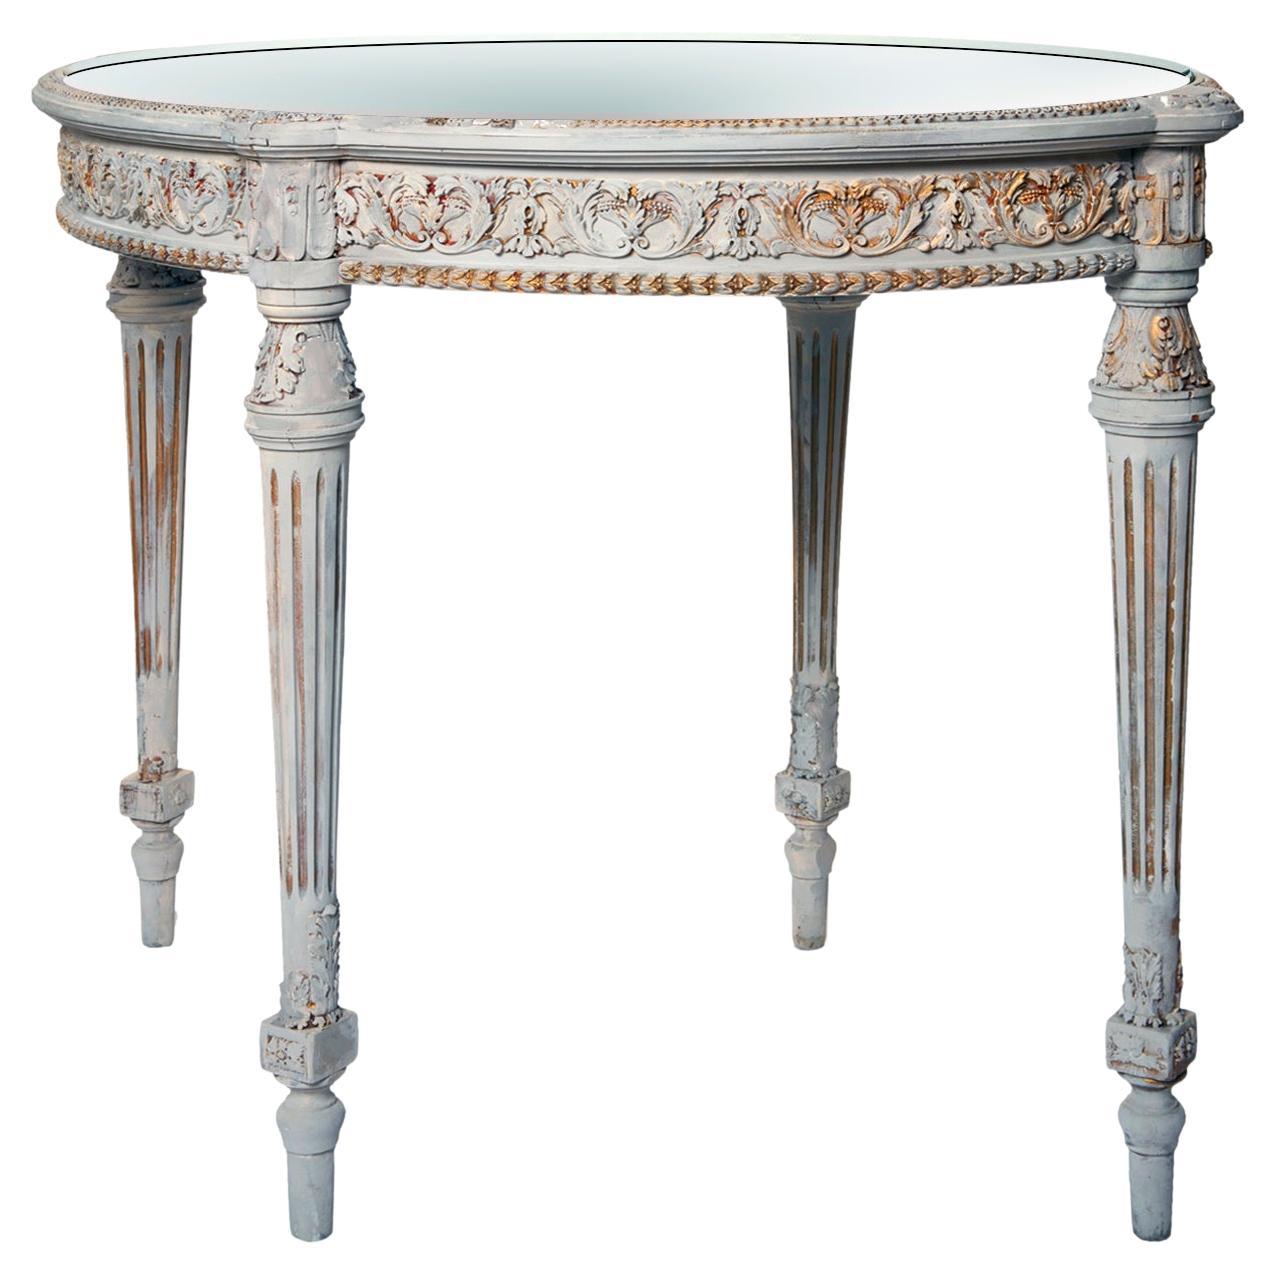 Table ovale de style Guéridon peinte à la main au 19ème siècle avec plateau en miroir